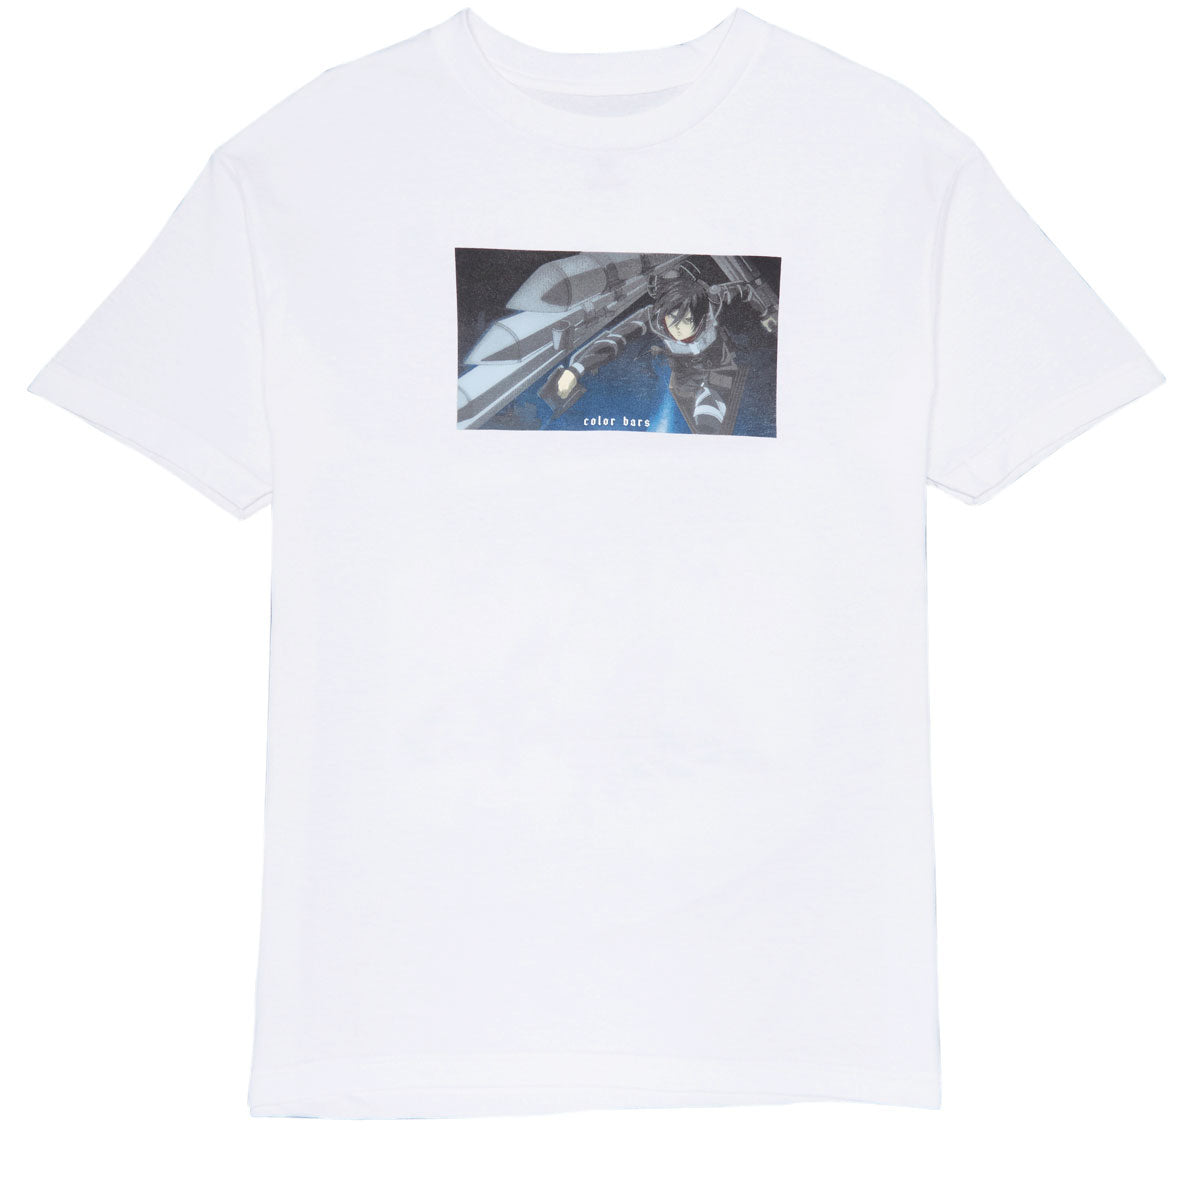 Color Bars x Attack on Titan Brigade T-Shirt - White image 1